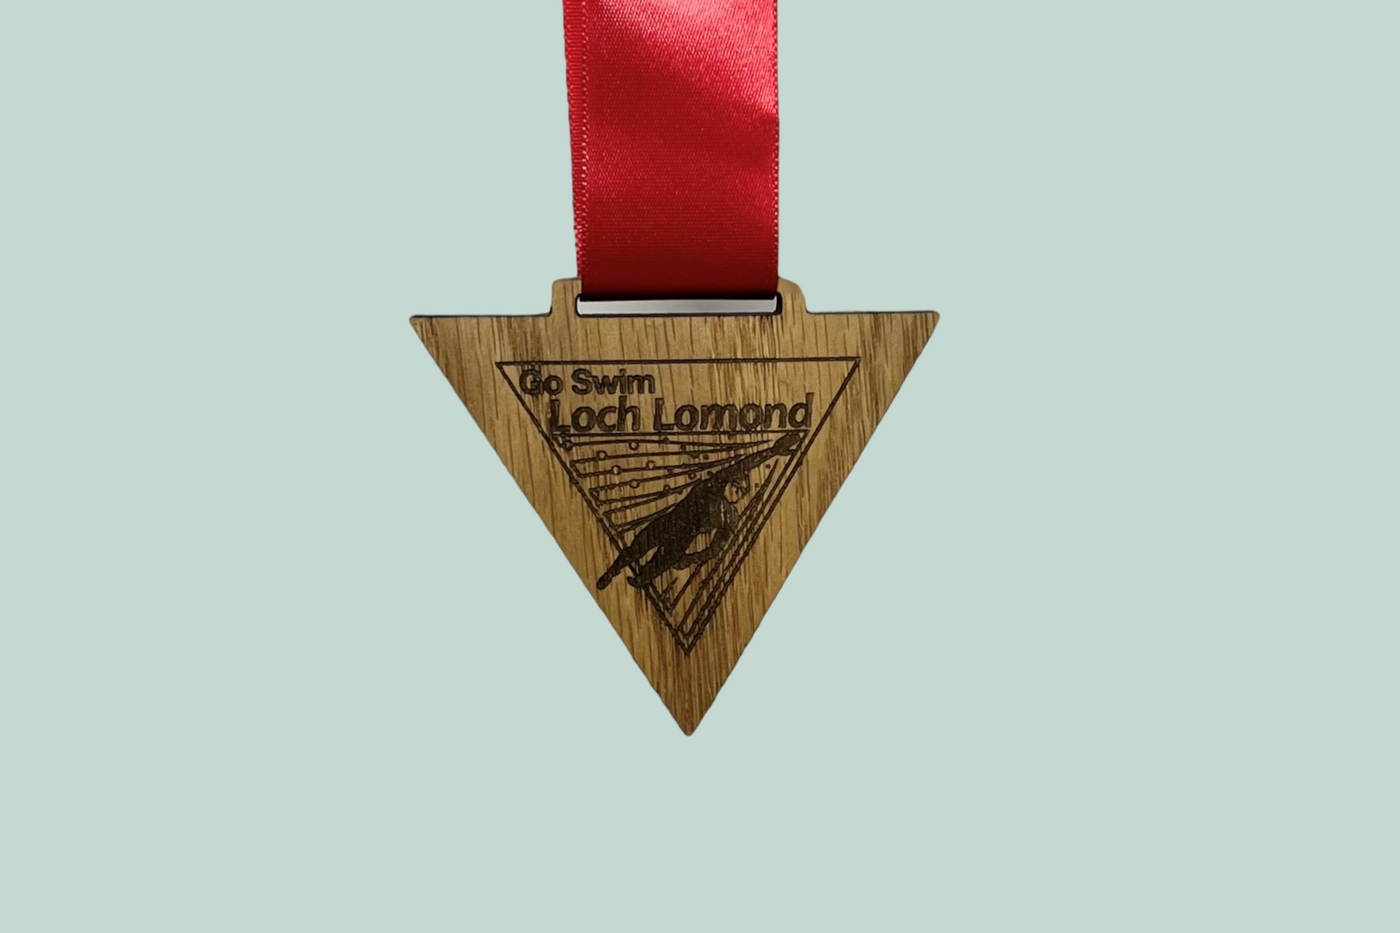 Bespoke Wooden Medal